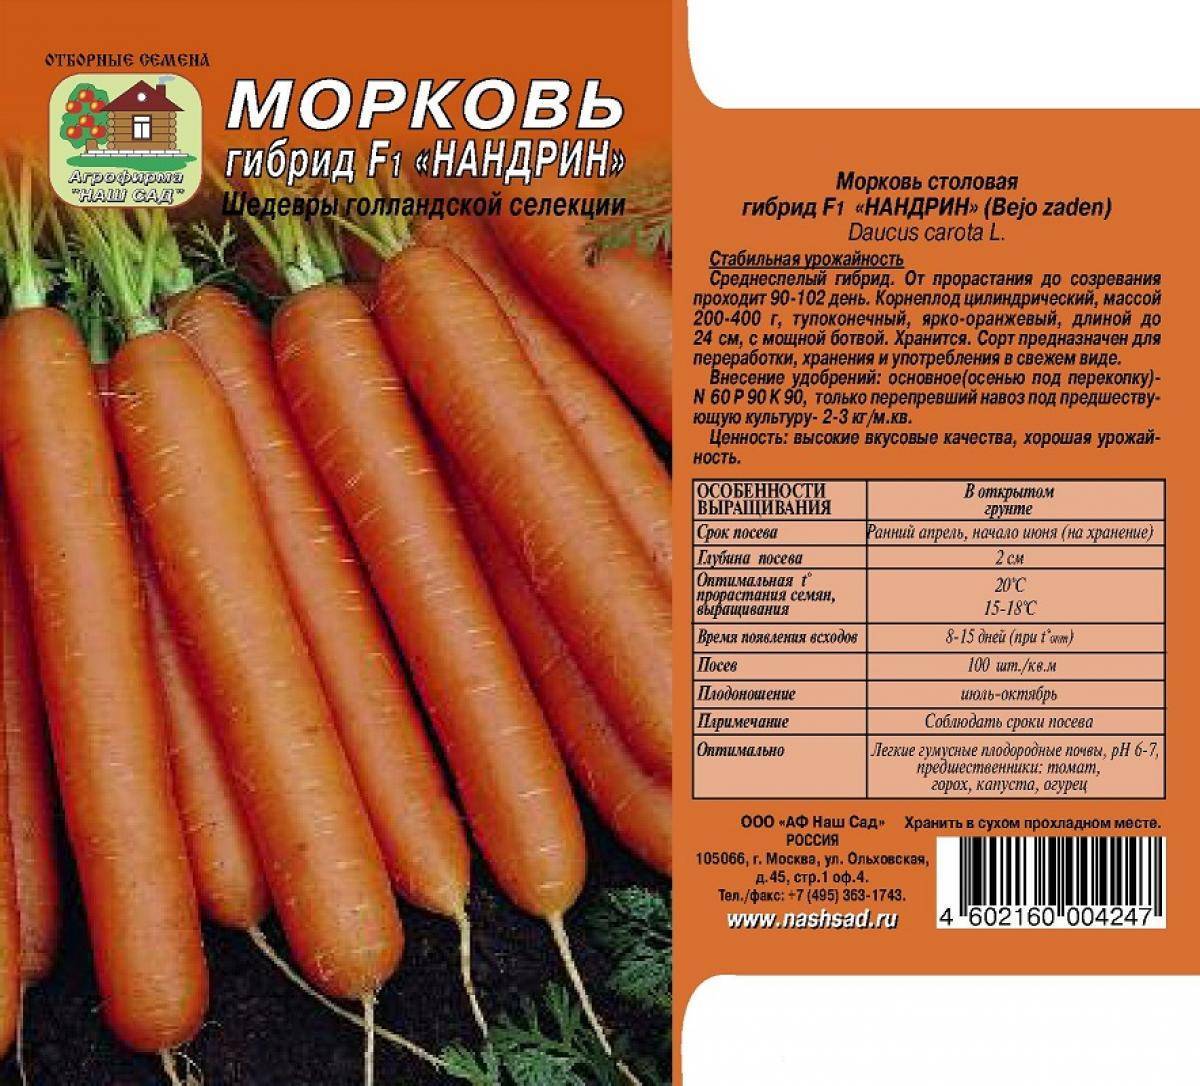 Морковь абако f1: описание сорта, технология выращивания, посадка и уход, повышение урожайности, сбор и хранение плодов, отзывы